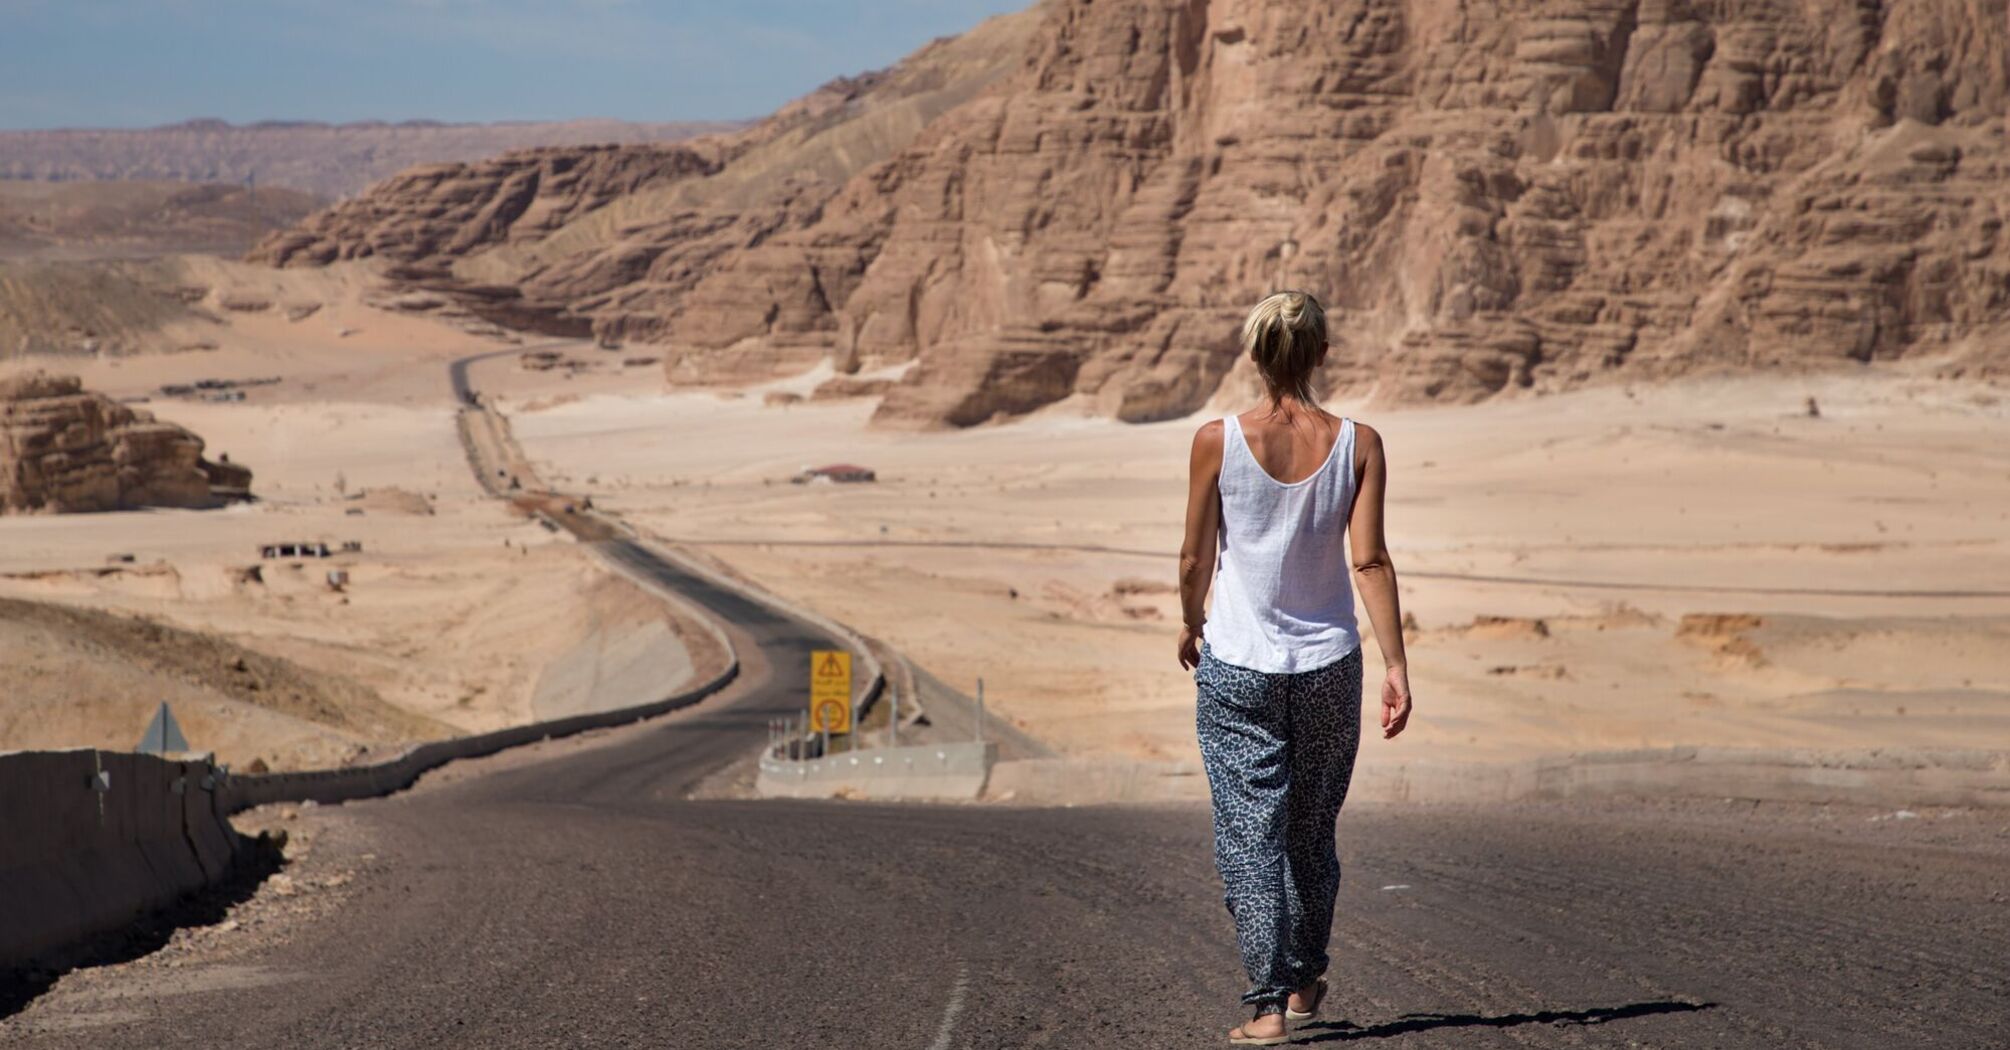 Traveler walking along a desert road in Egypt